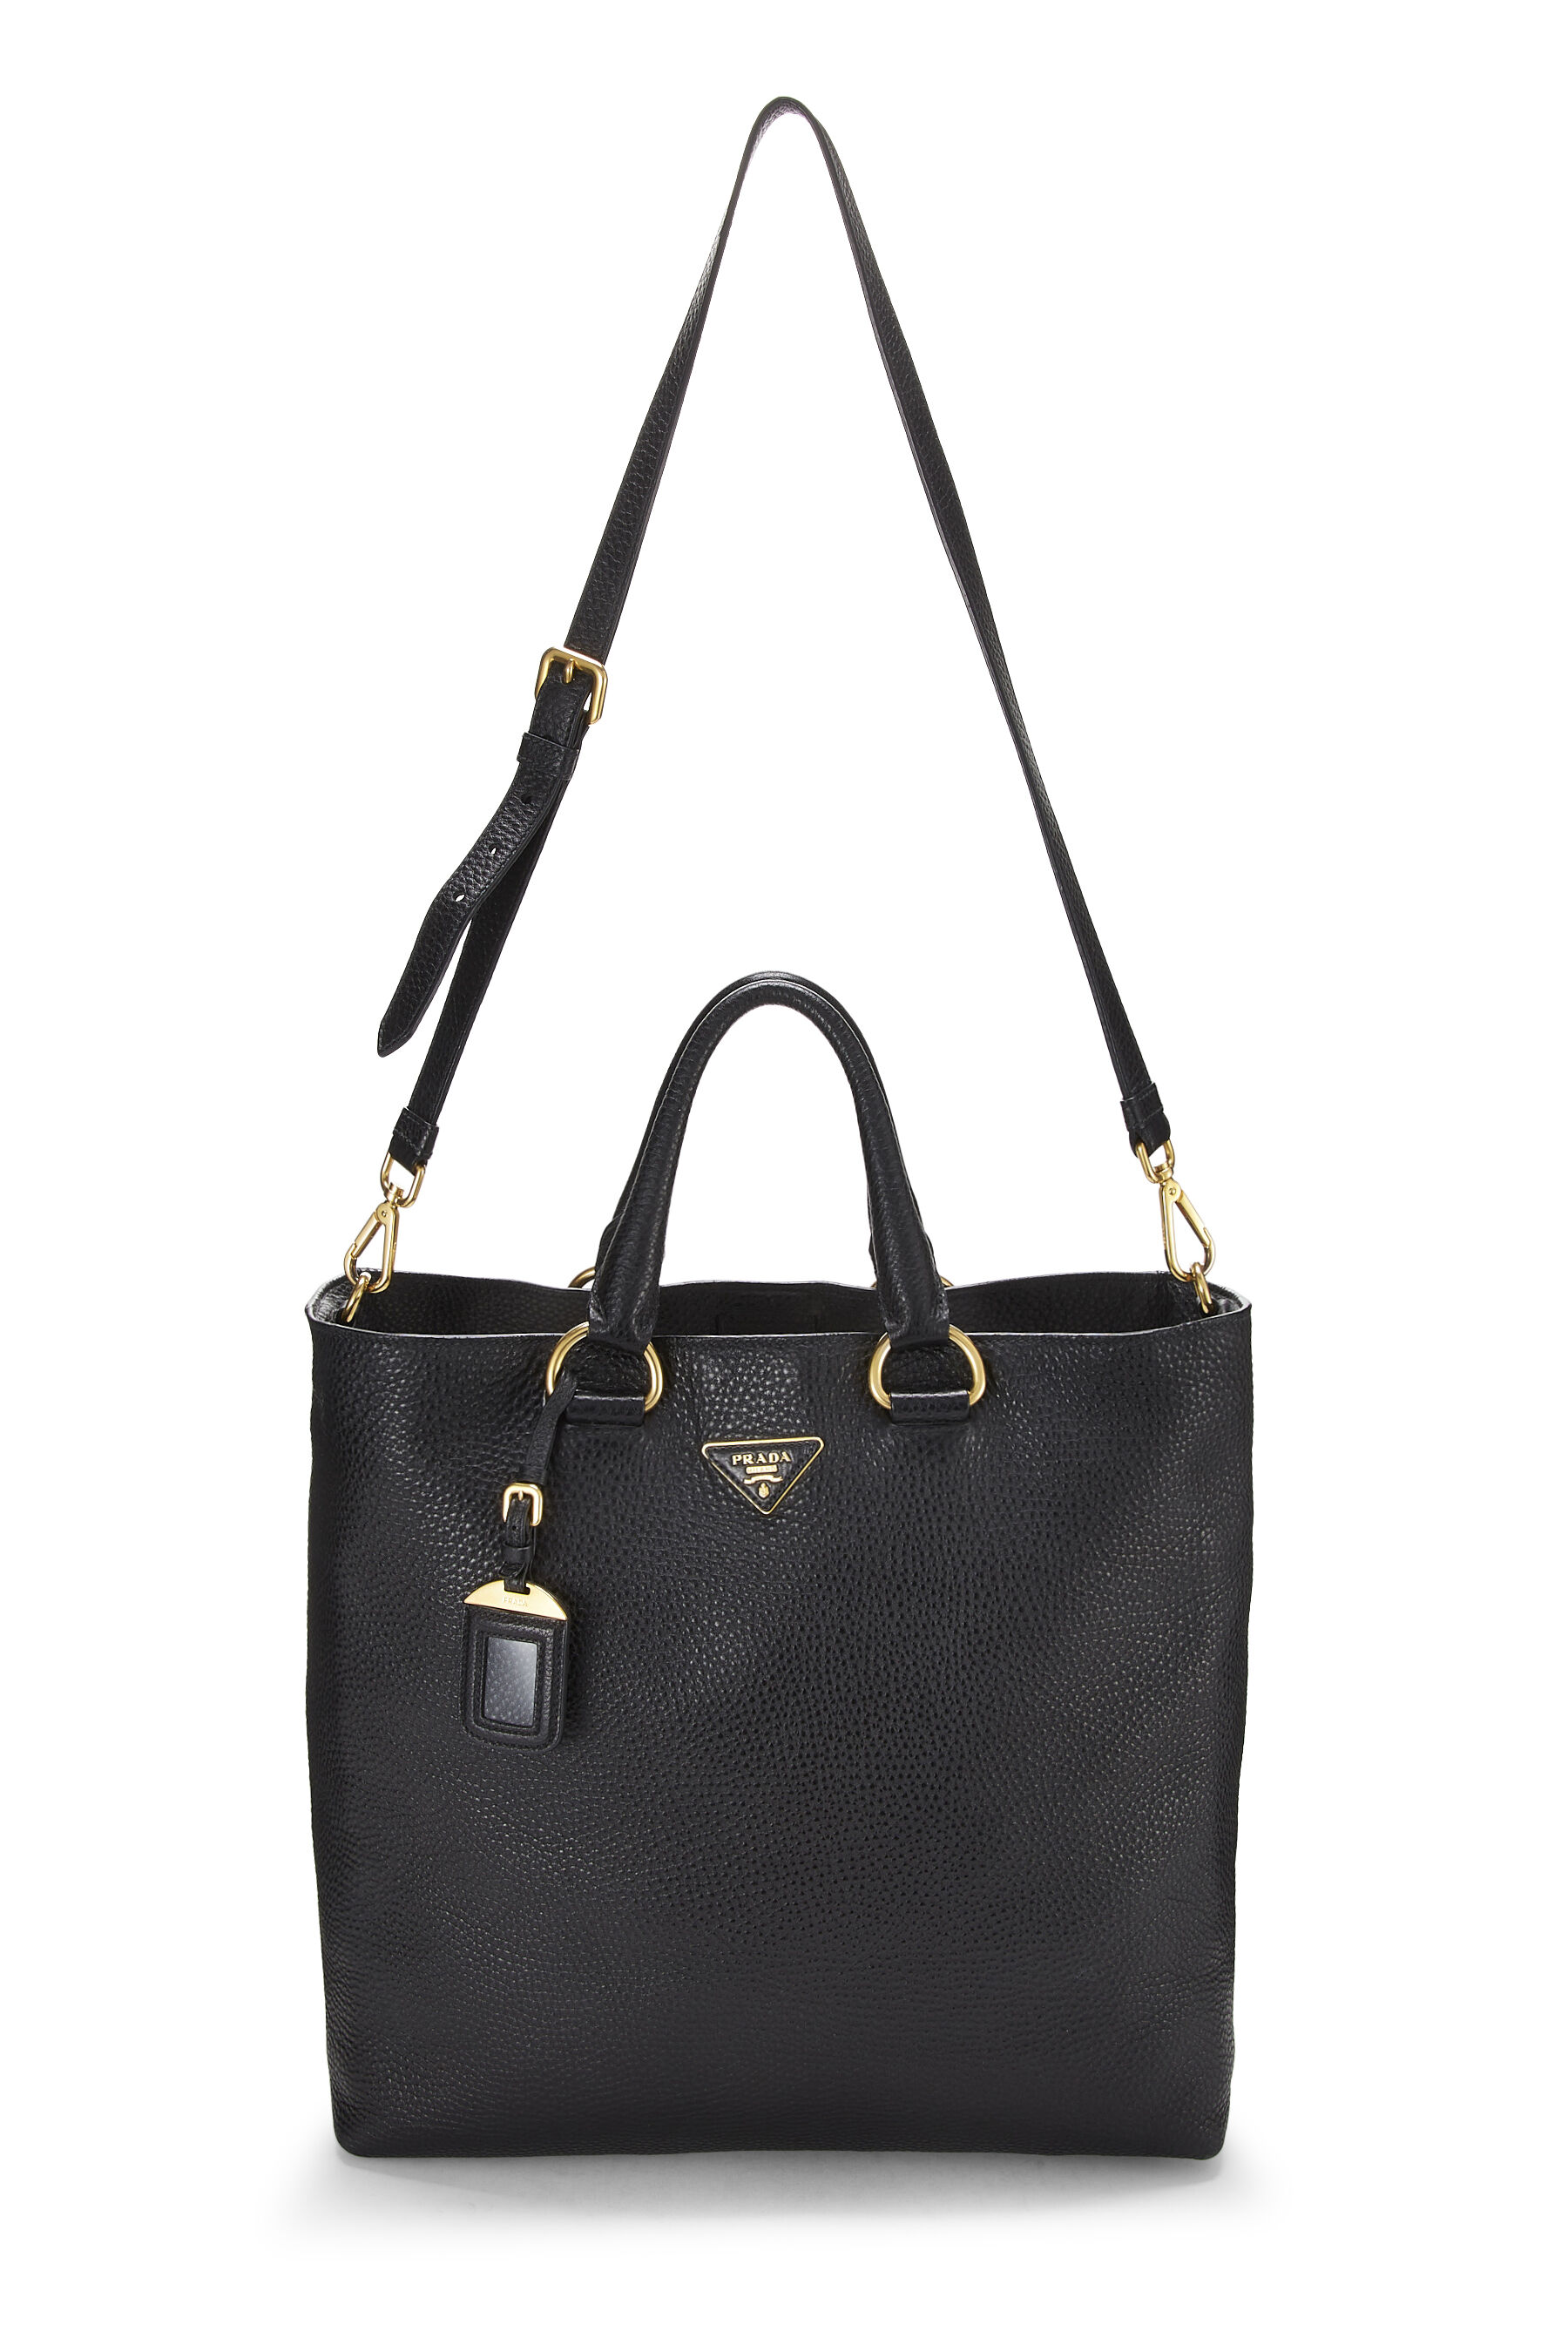 Prada, Bags, Authentic Prada Vitello Phenix Leather Convertible Bag Black